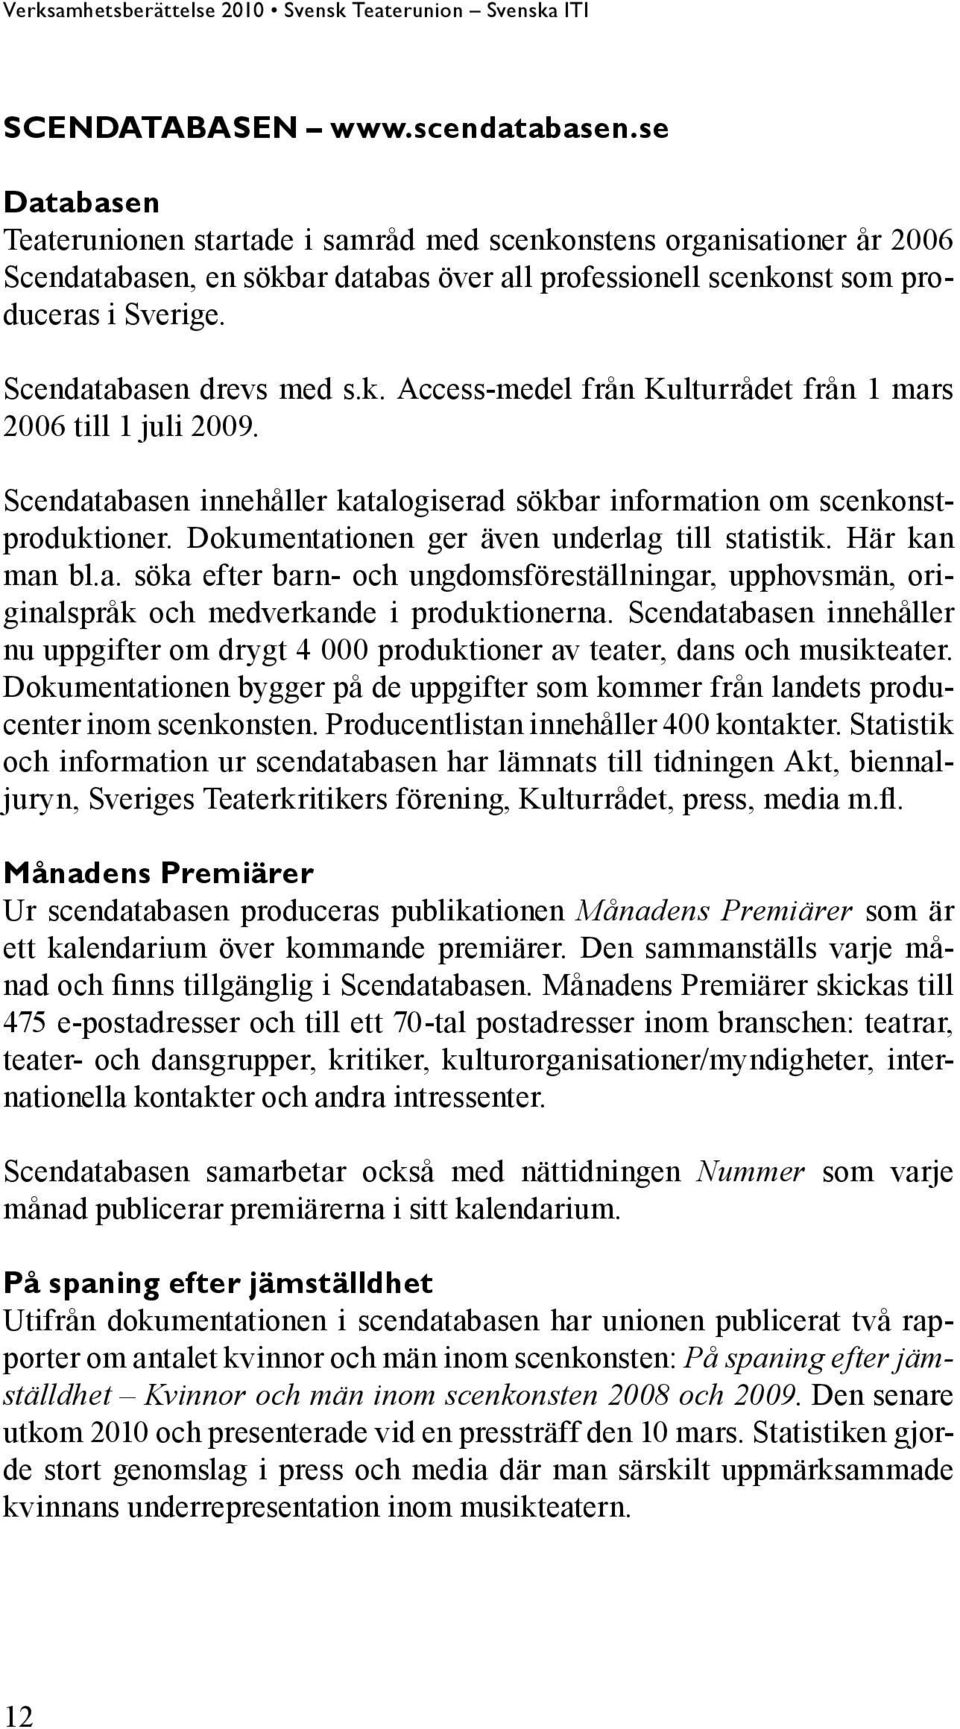 Scendatabasen drevs med s.k. Access-medel från Kulturrådet från 1 mars 2006 till 1 juli 2009. Scendatabasen innehåller katalogiserad sökbar information om scenkonstproduktioner.